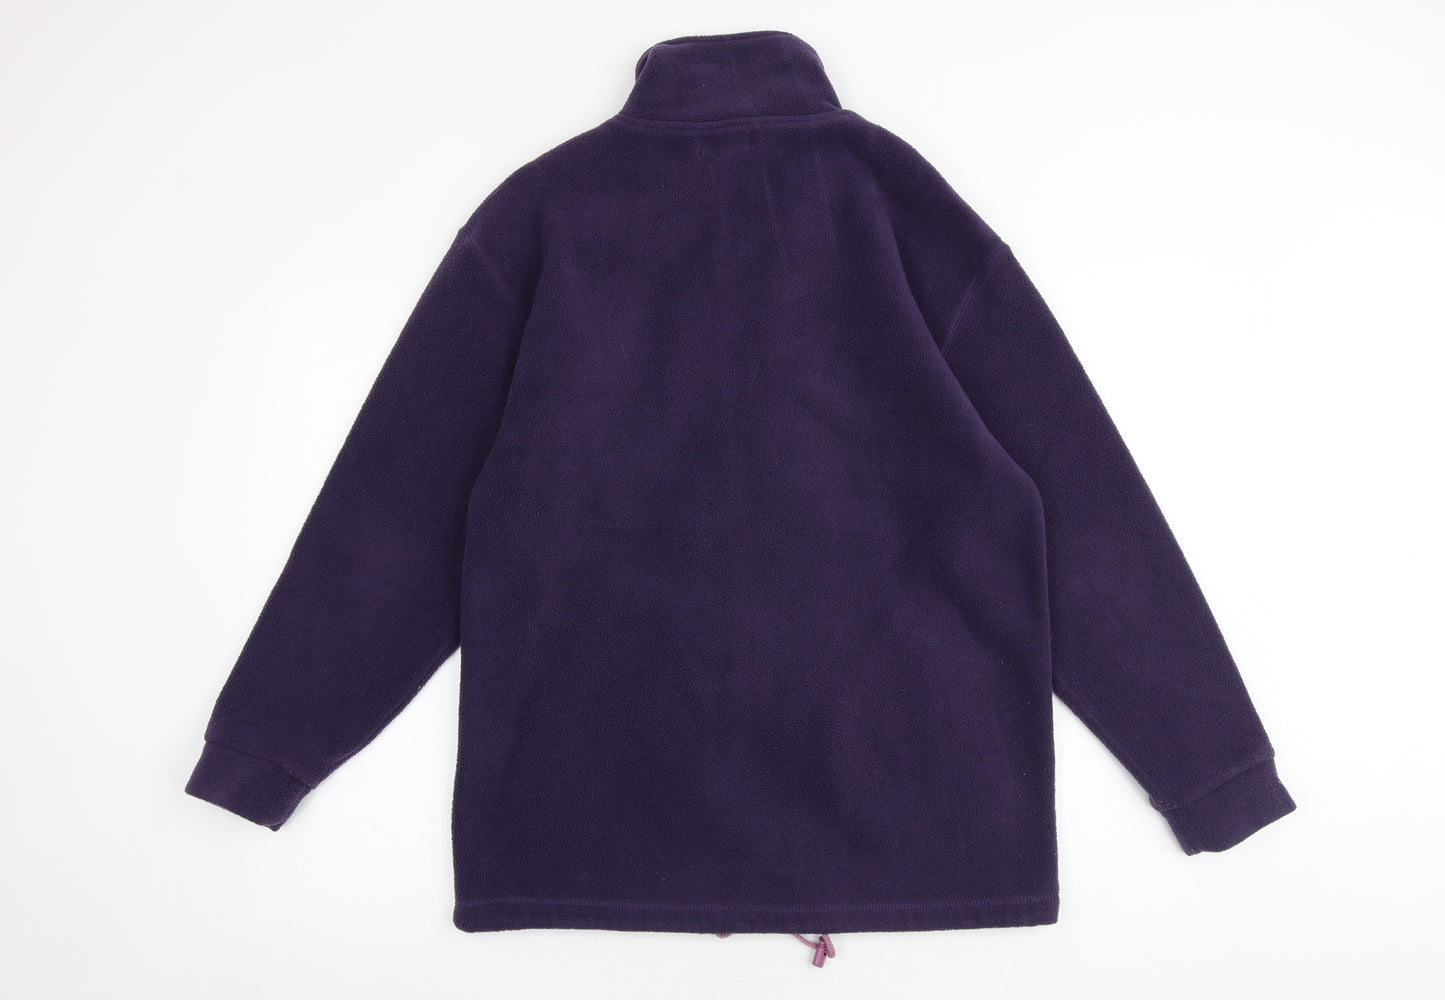 Bonmarché Womens Purple Jacket Size S Zip